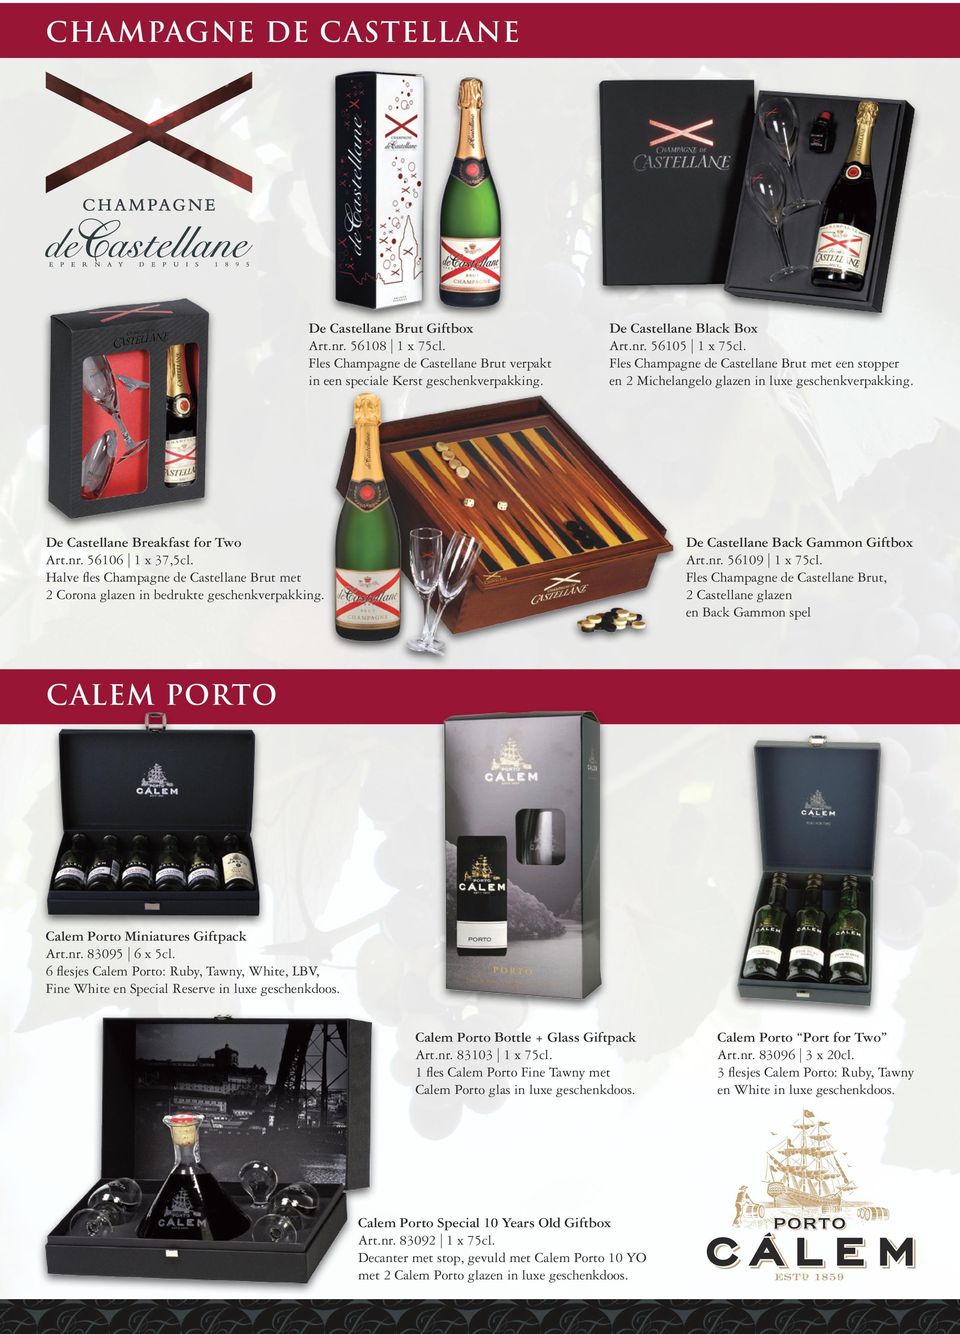 Halve fles Champagne de Castellane Brut met 2 Corona glazen in bedrukte geschenkverpakking. De Castellane Back Gammon Giftbox Art.nr. 56109 1 x 75cl.